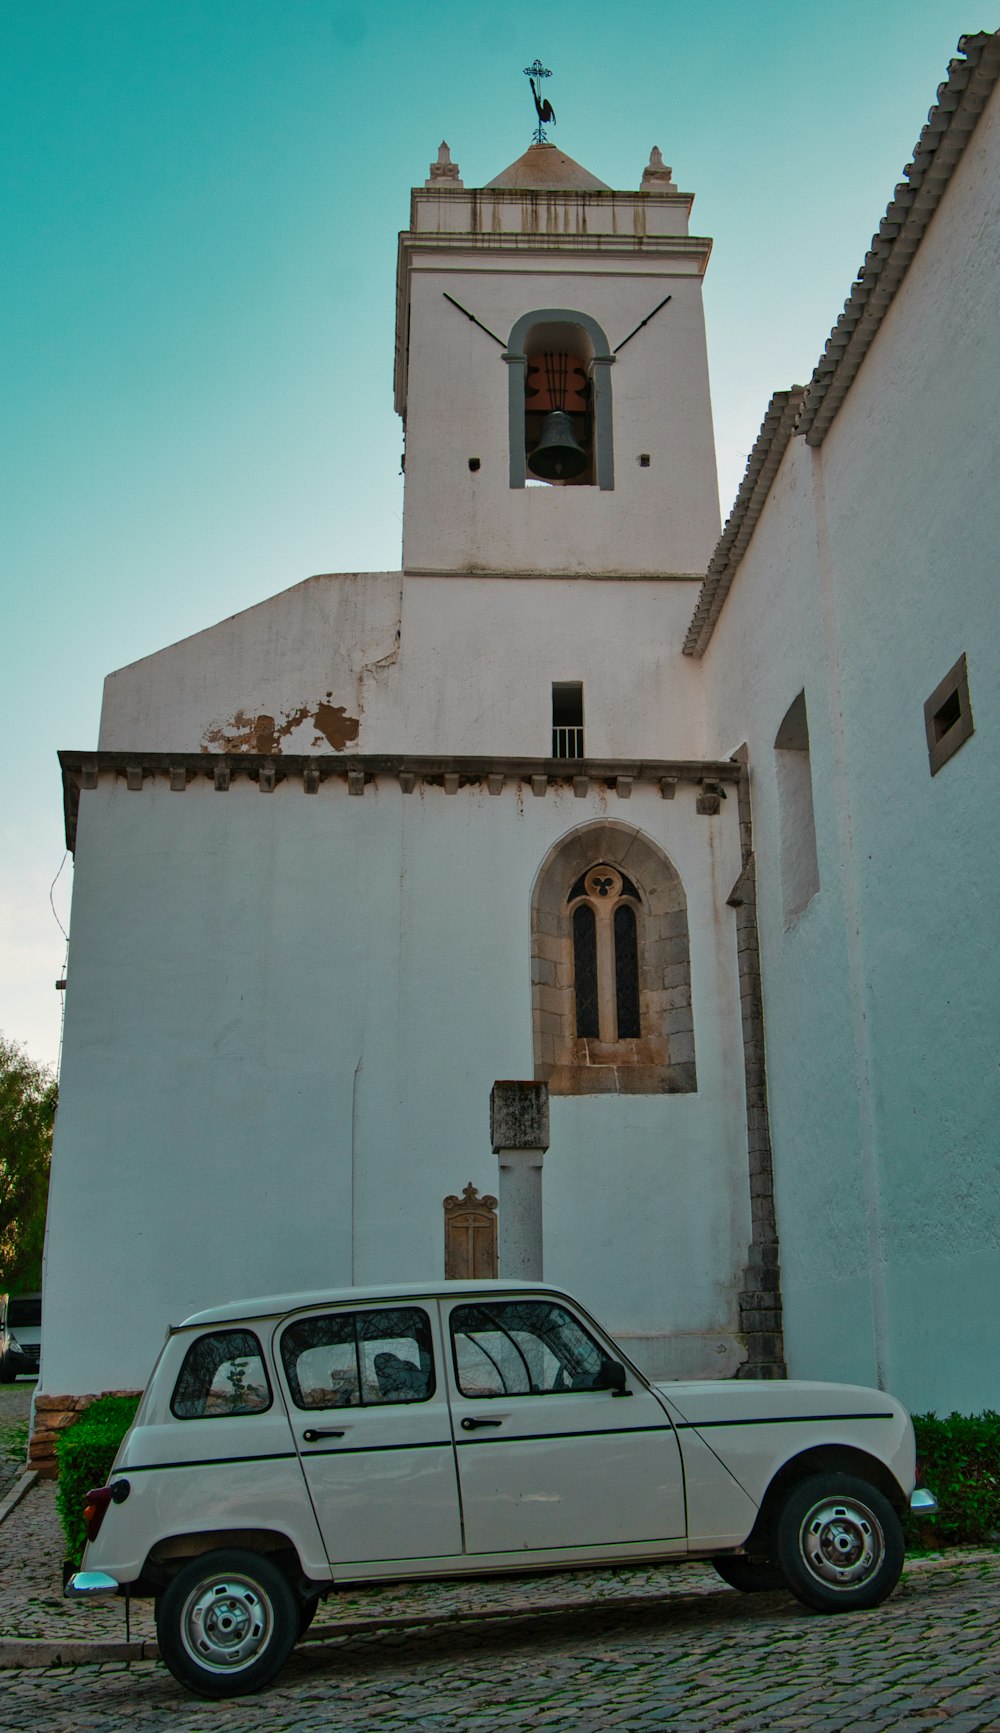 Un coche blanco aparcado frente a una iglesia